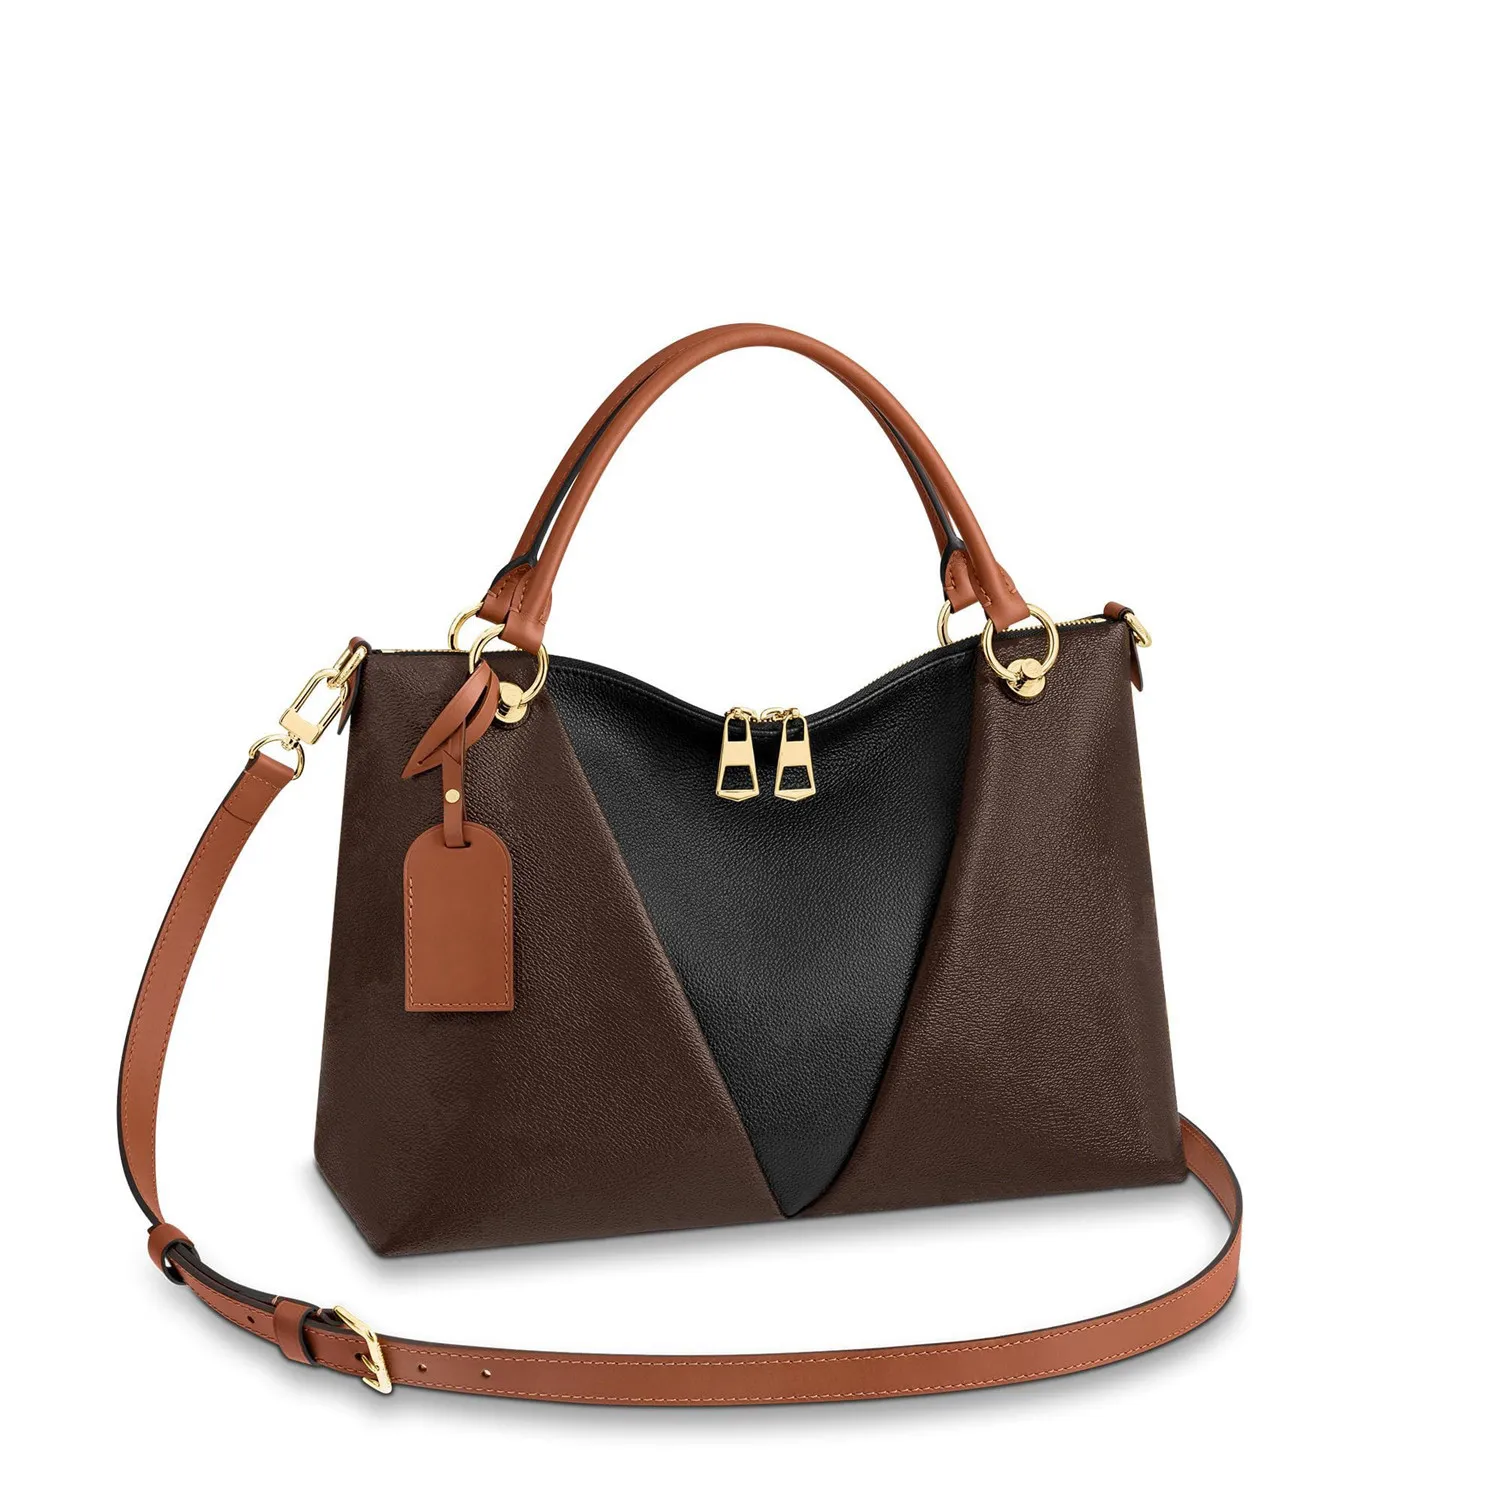 ハンドバッグトートバッグラージトートハンドバッグトートバックパックレディースバッグ財布茶色のバッグレザークラッチファッション財布バッグ43948 mm / bb CP0167